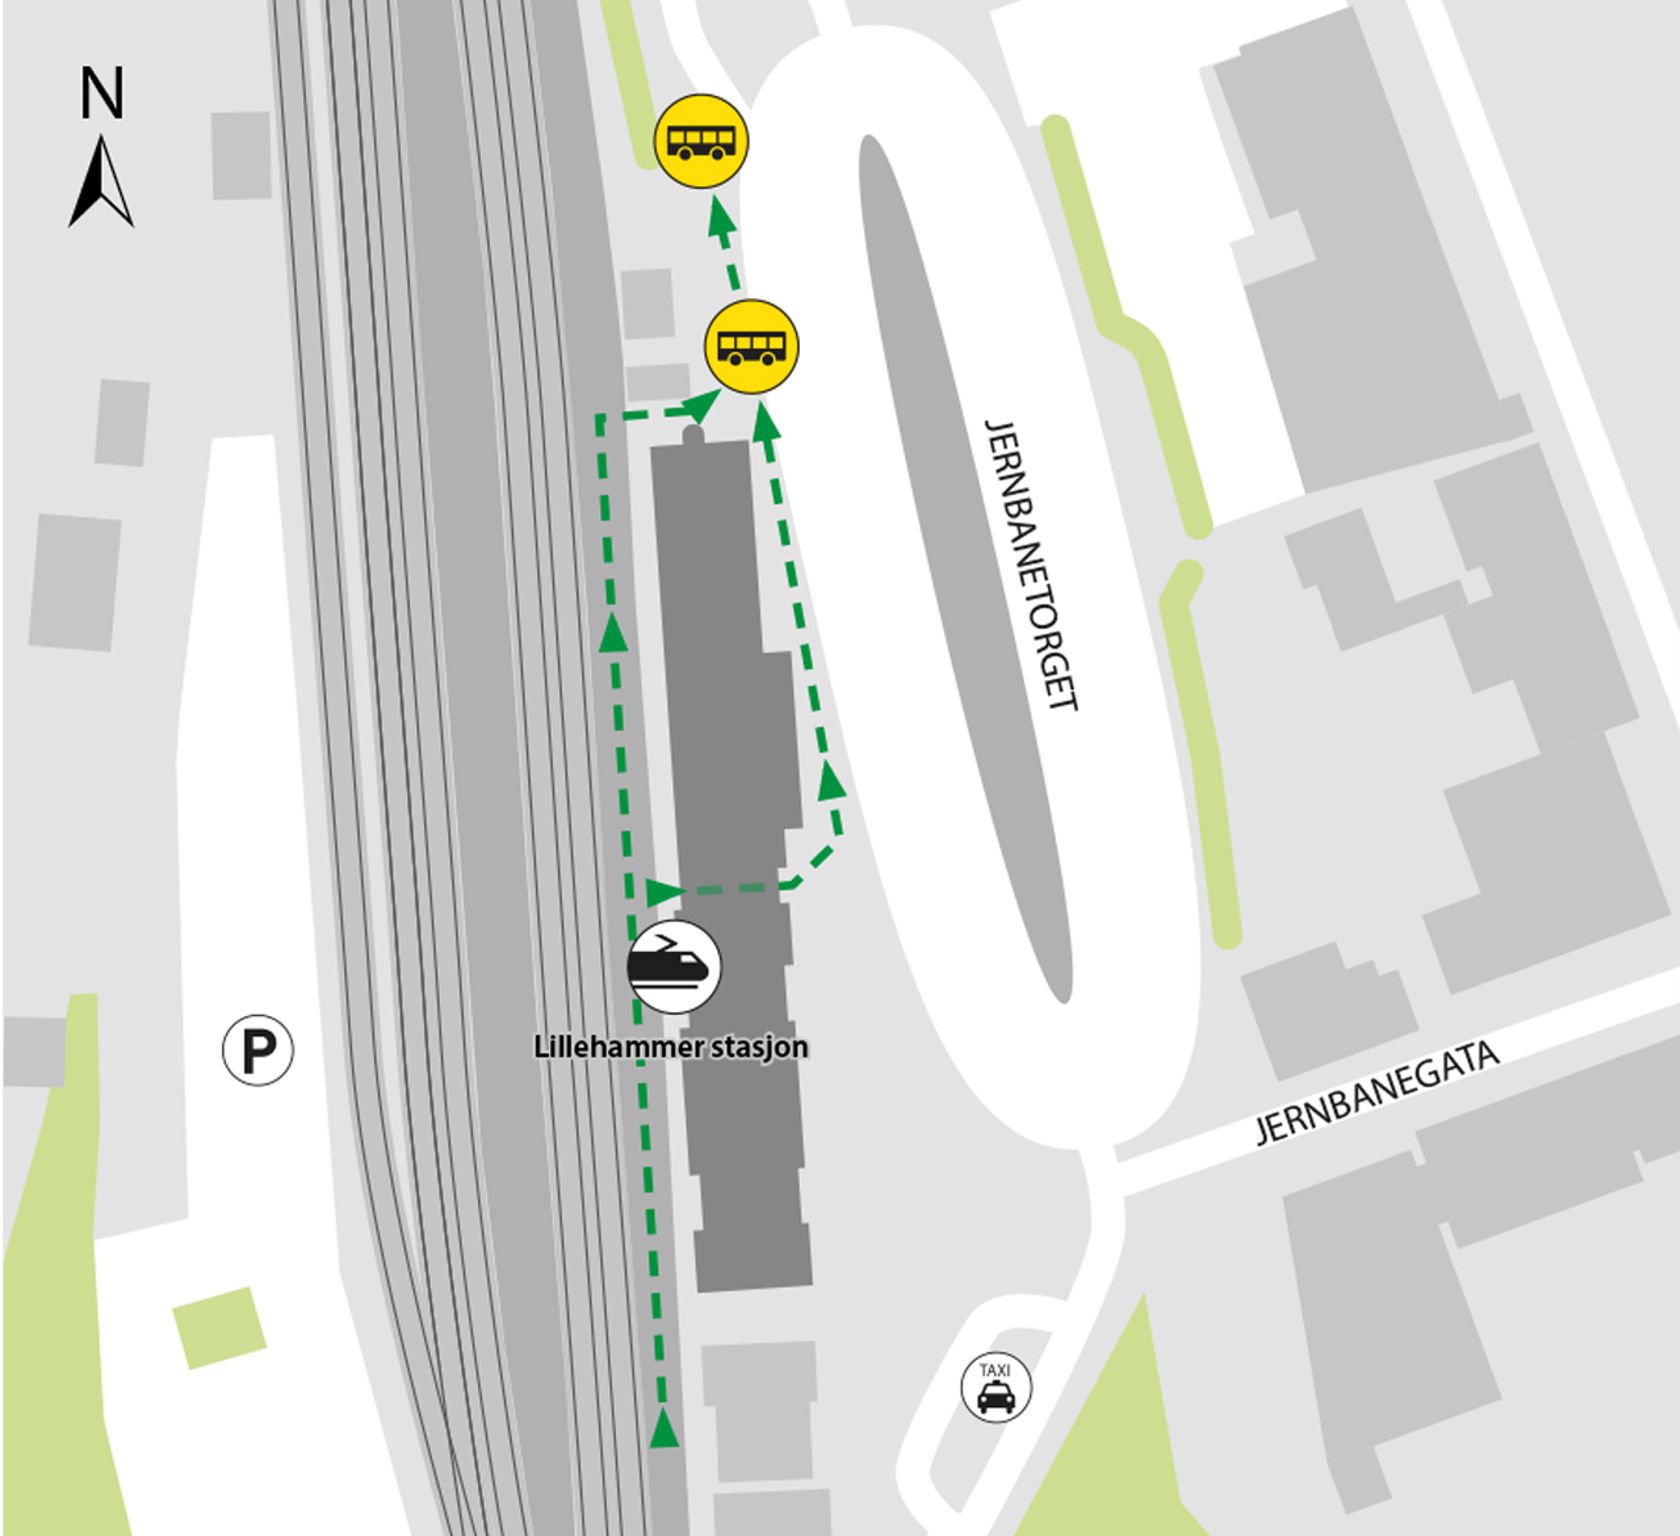 Kartet viser at bussene kjører fra bussholdeplassen Lillehammer skysstasjon